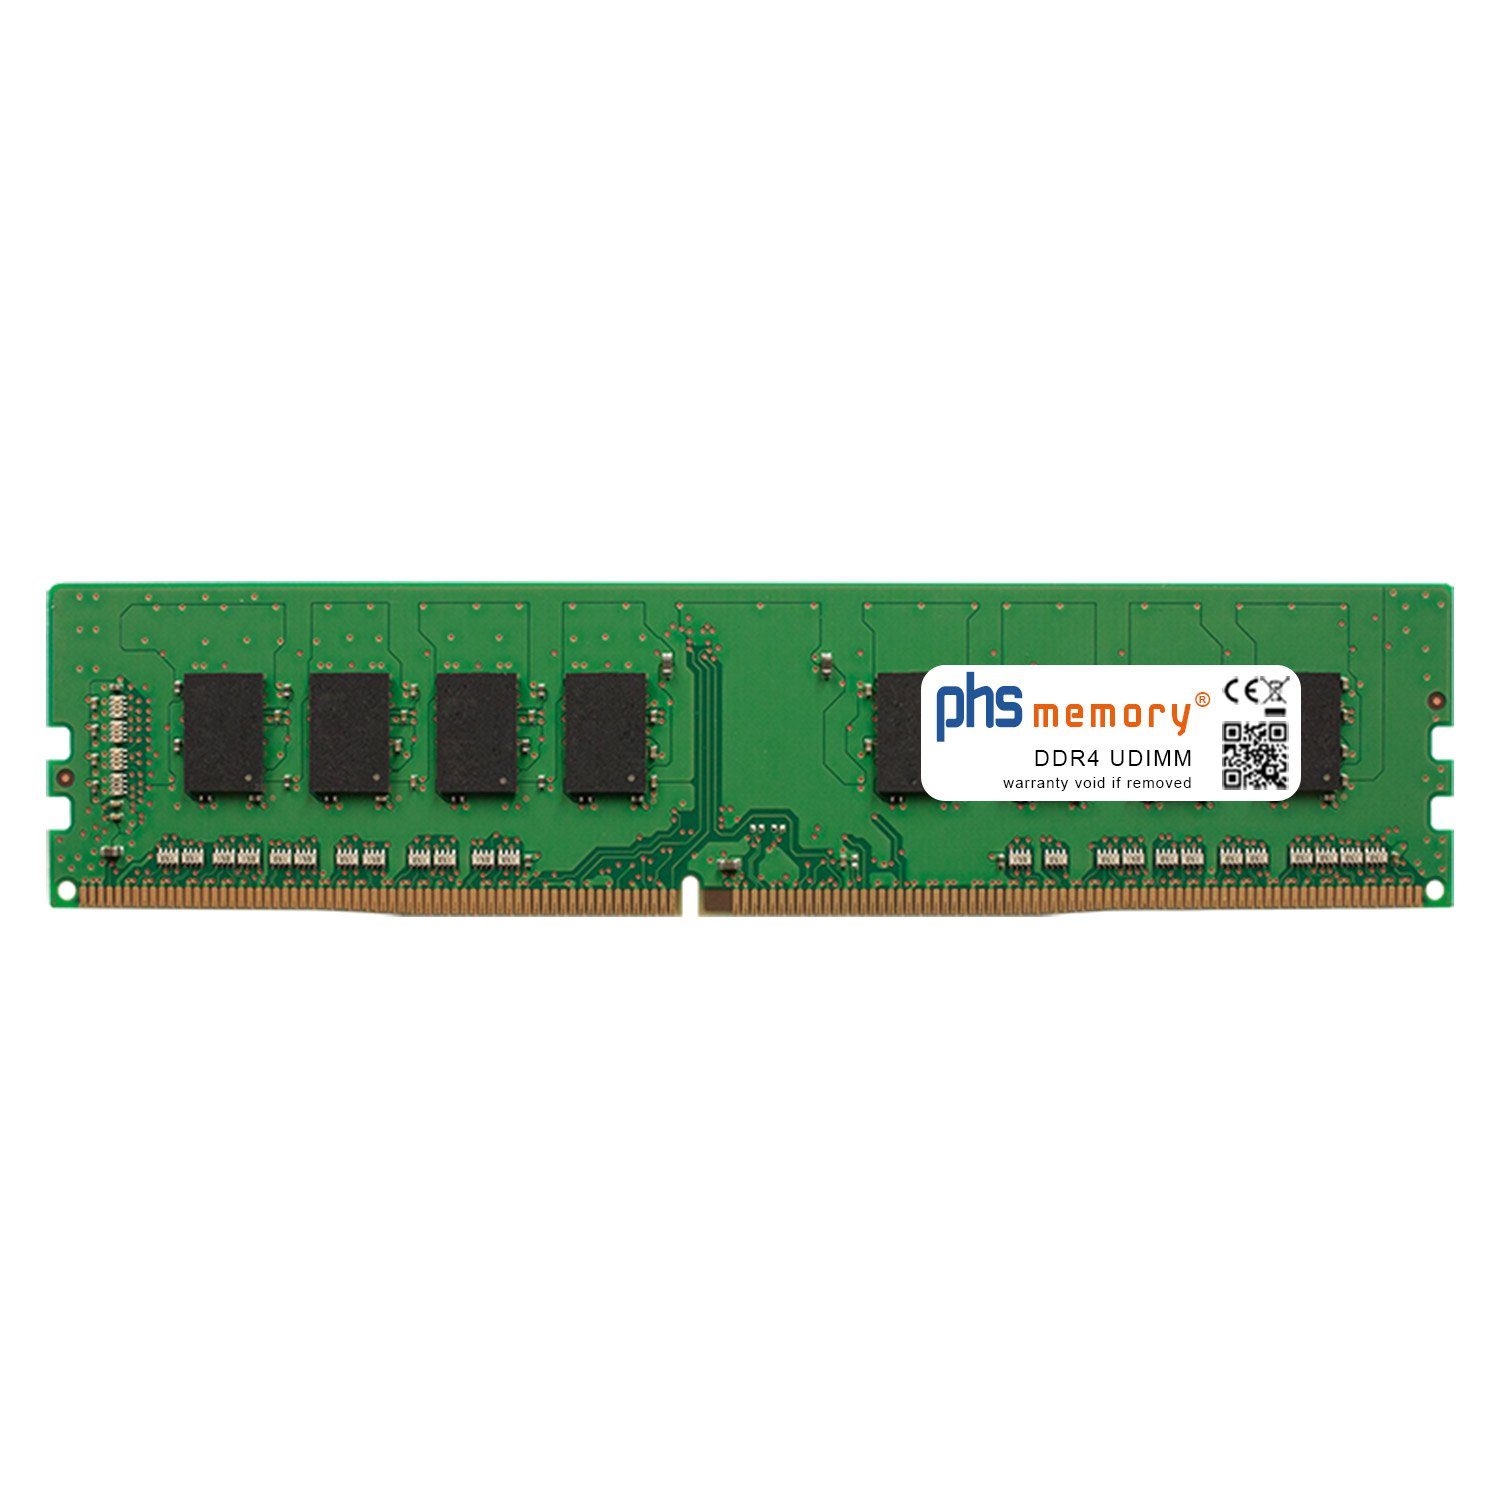 PHS-memory RAM für Captiva Advanced Gaming R70-316 Arbeitsspeicher